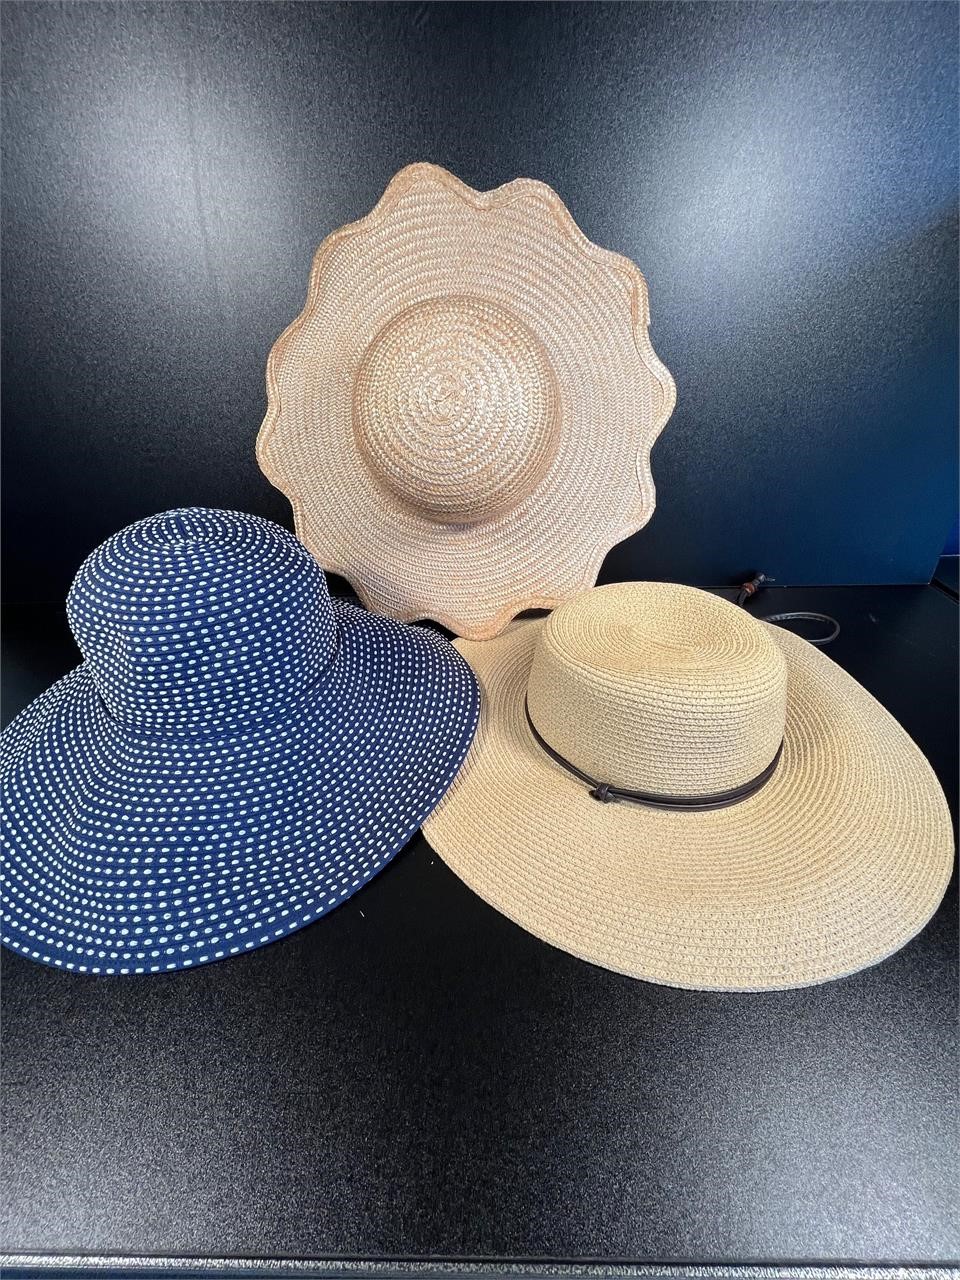 3 Women's Fashion/Sun Hats